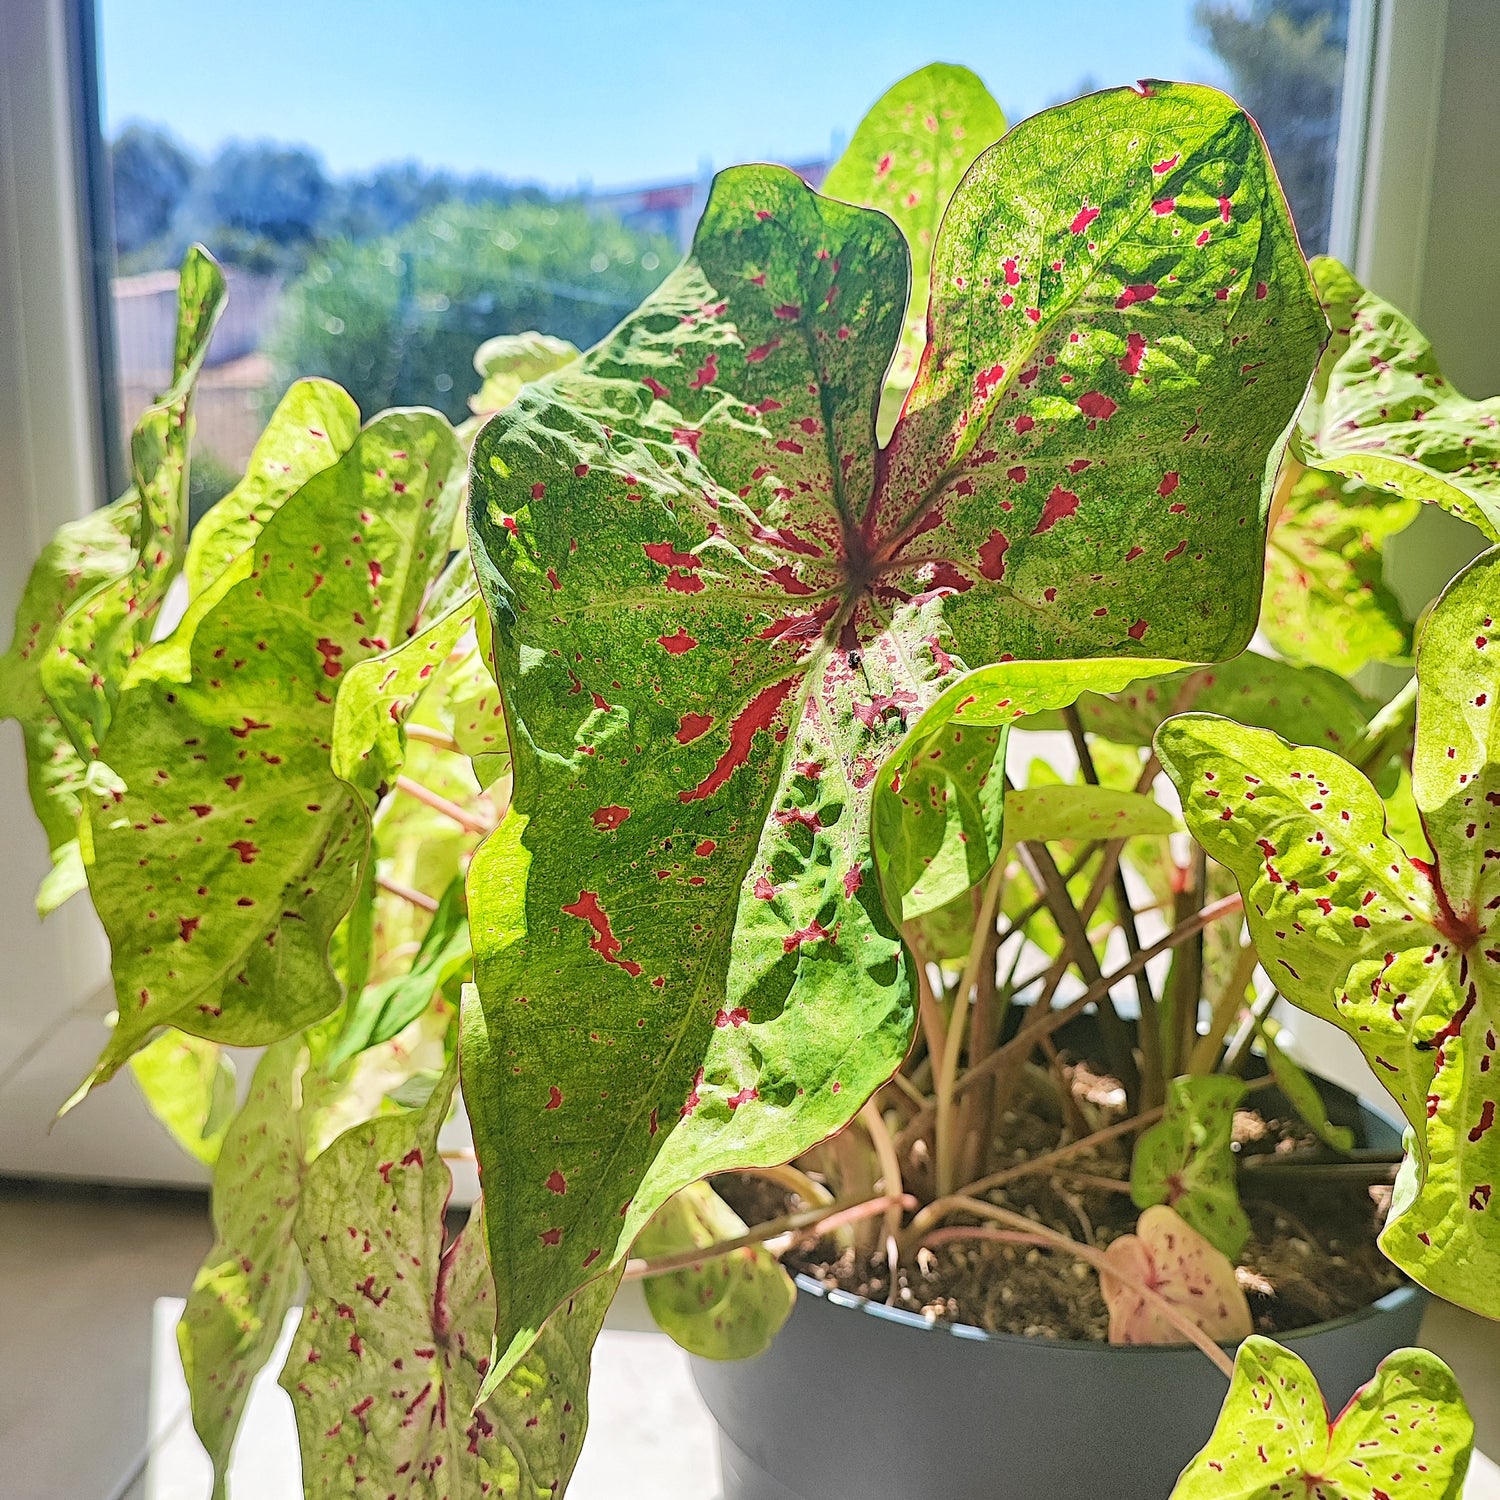 Caladium Miss Muffet (L), plante aux feuilles flouée